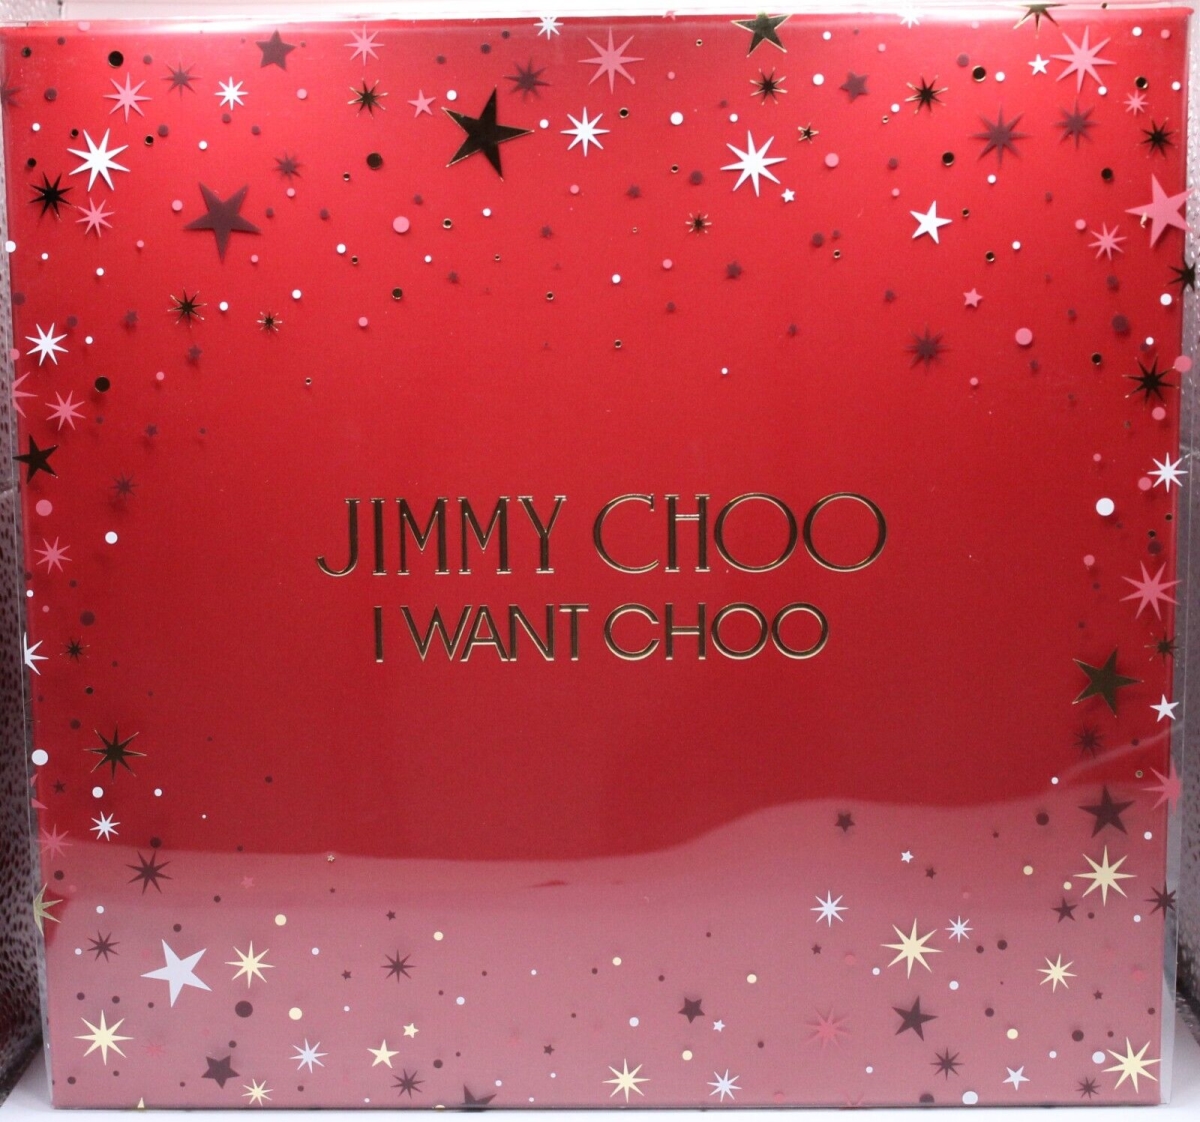 Jimmy Choo JCH6F-A Jimmy Choo & Jimmy Choo Set for Women